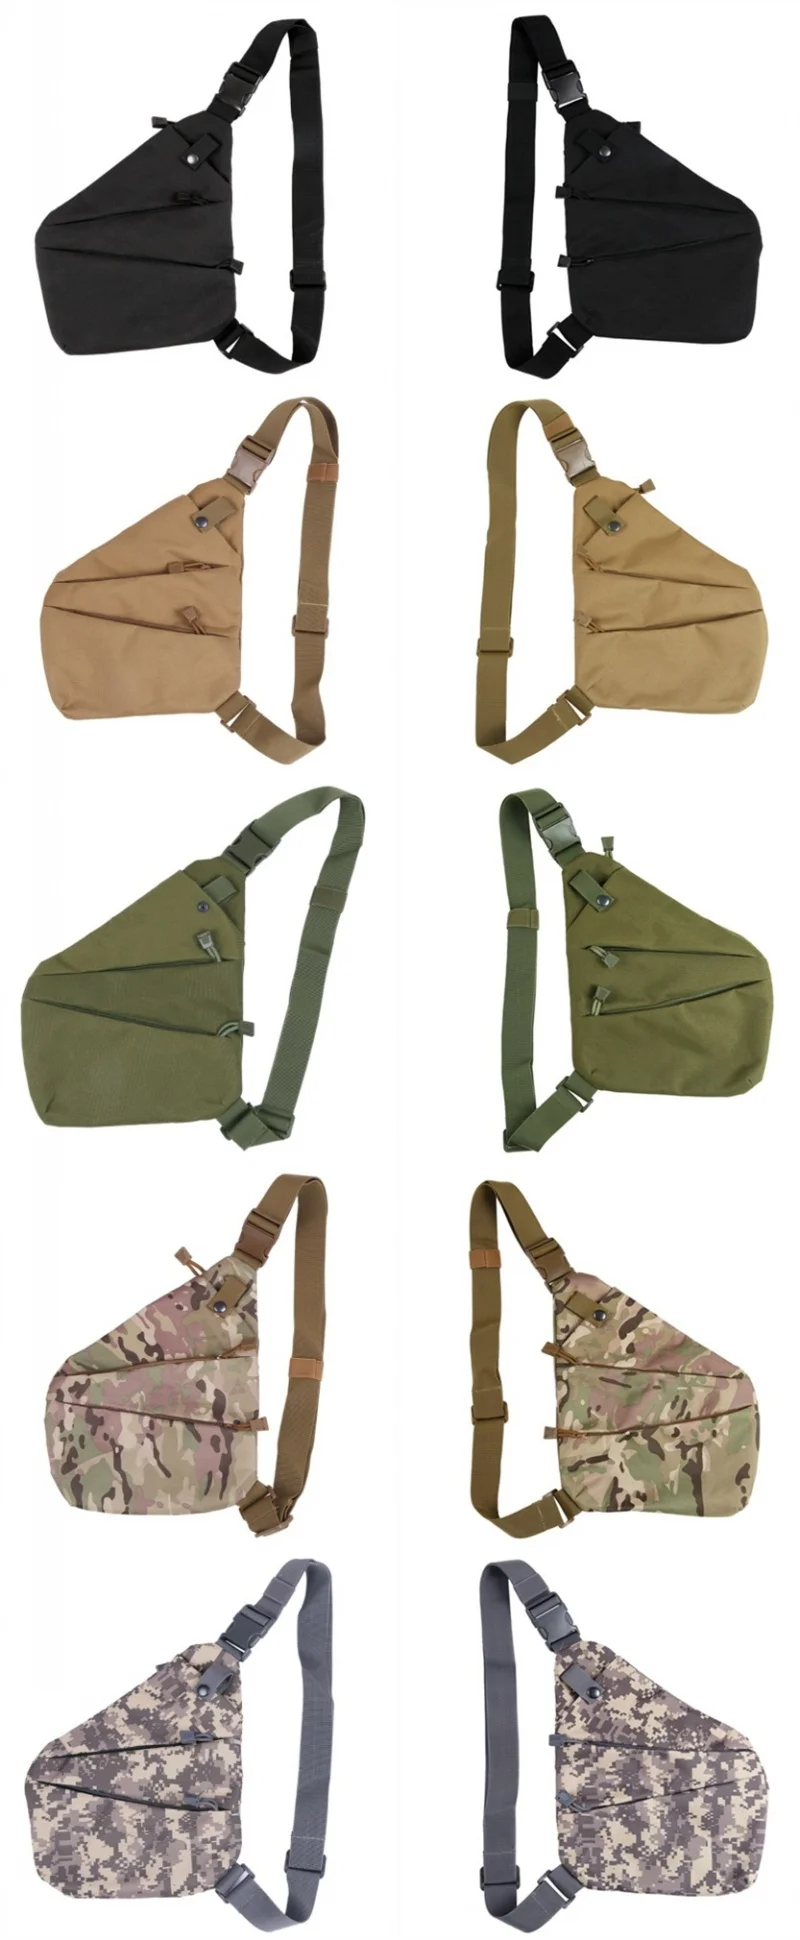 Открытый скрытый пистолет кобура Сумка мессенджер военный EDC хранения тактические сумки на плечо для мужчин многофункциональная охотничья сумка